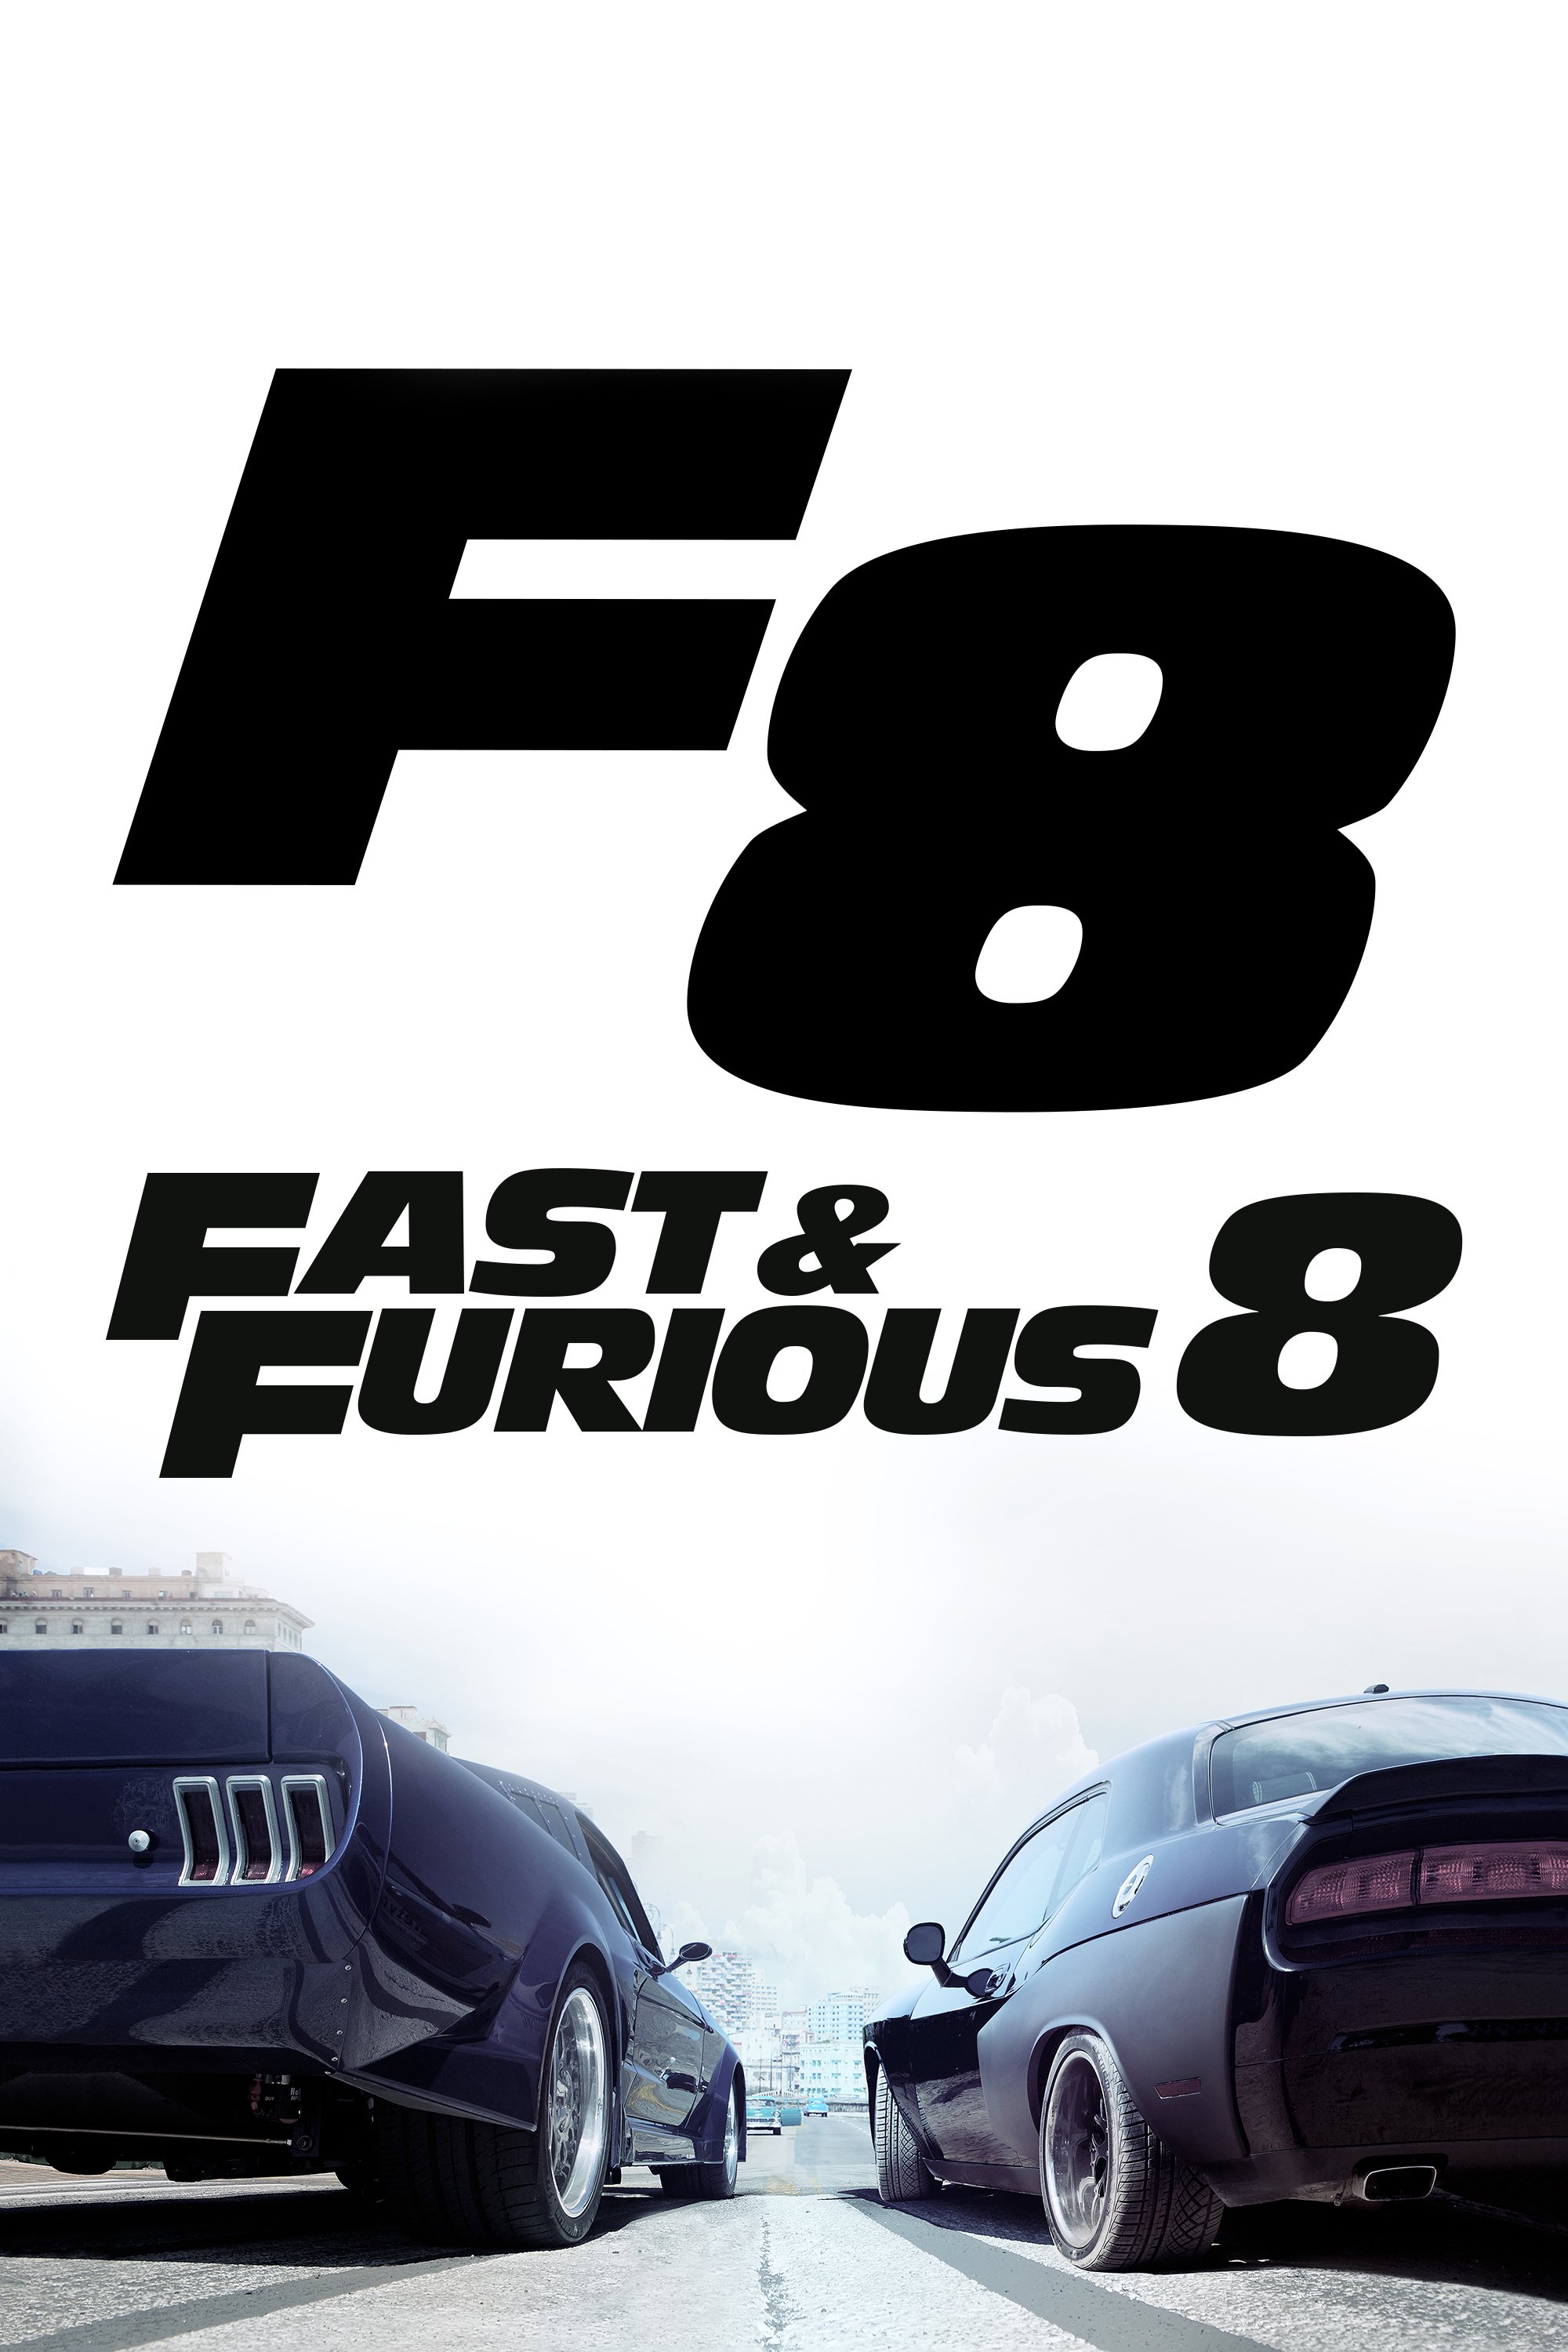 Plakat von "Fast & Furious 8"